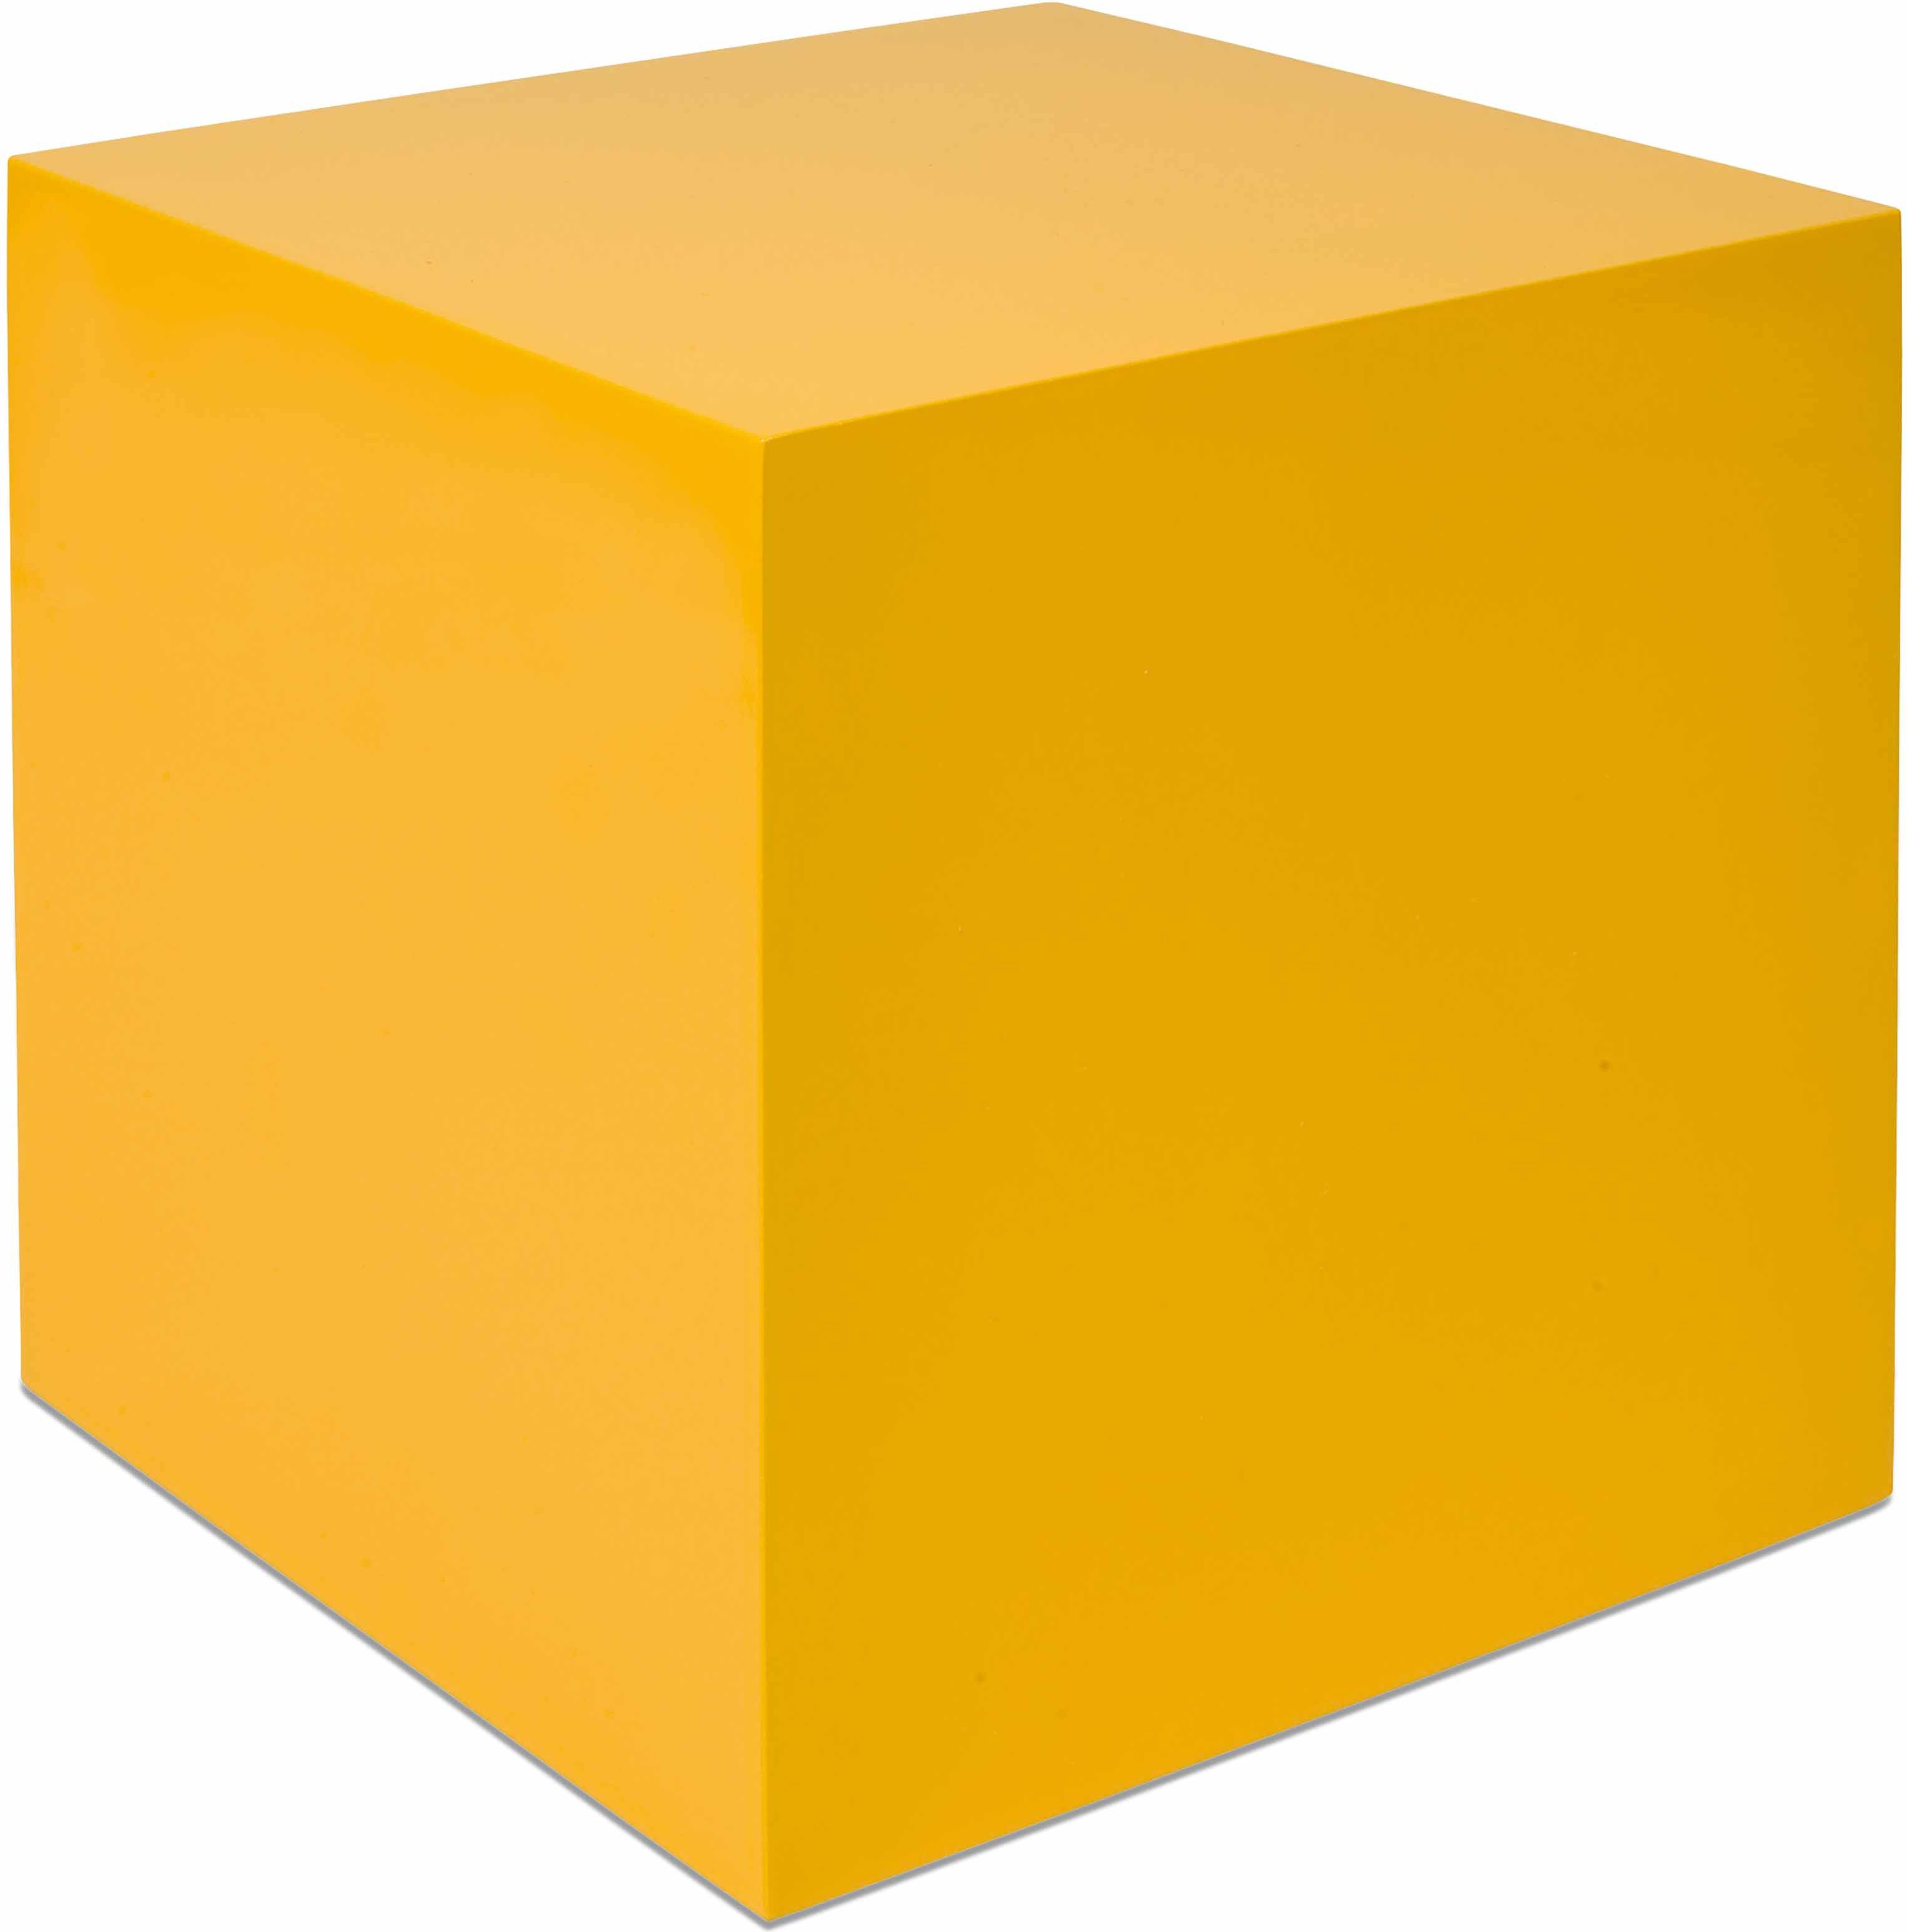 Nienhuis Montessori One Yellow Cube 27 x 27 x 27 cm - obrázek 1